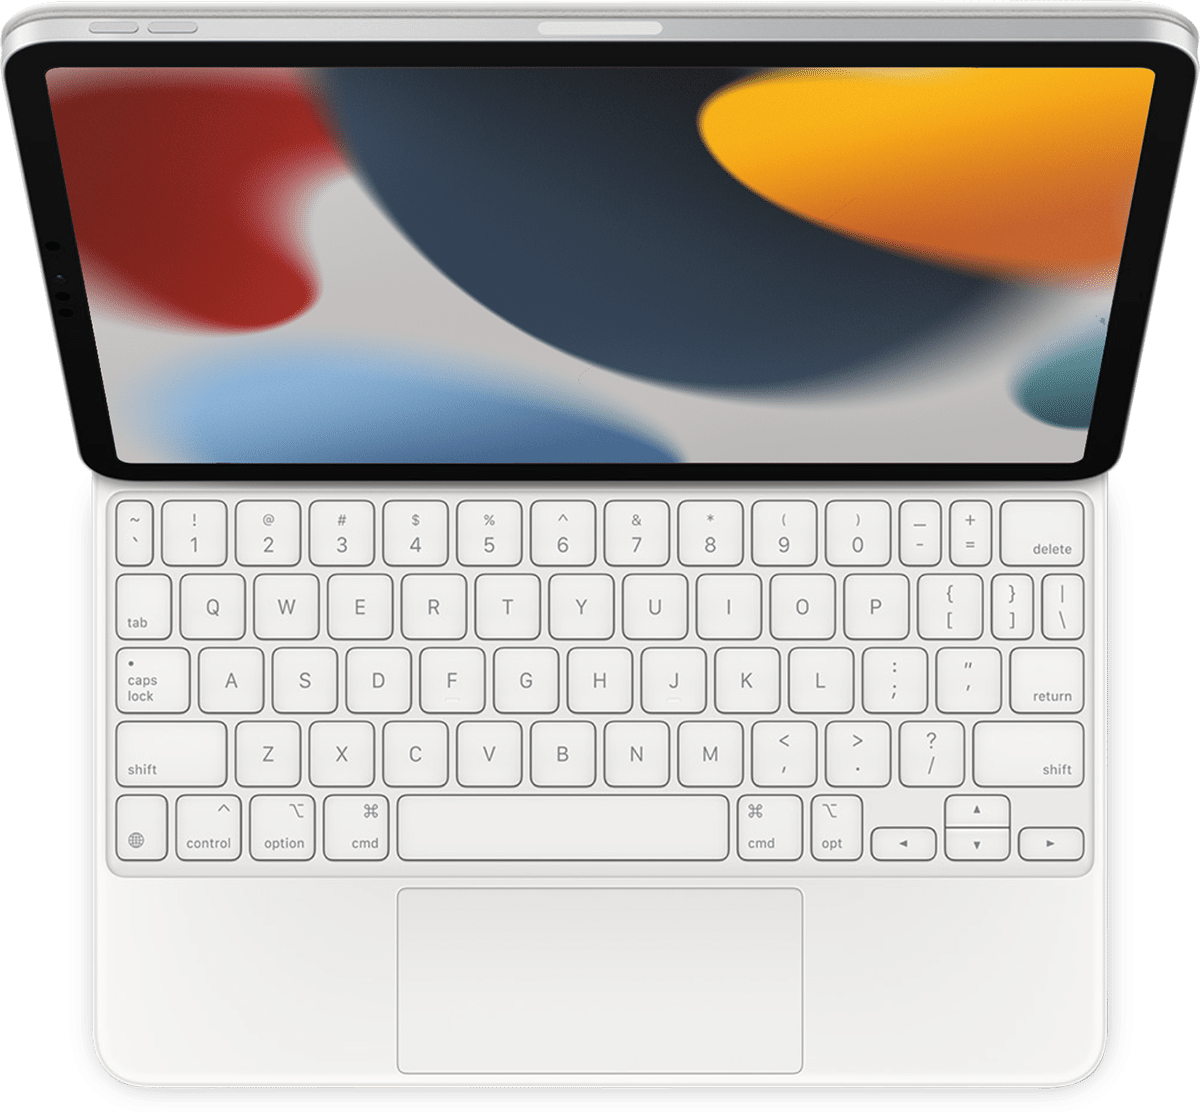 iPad Magic Keyboard no ESC?